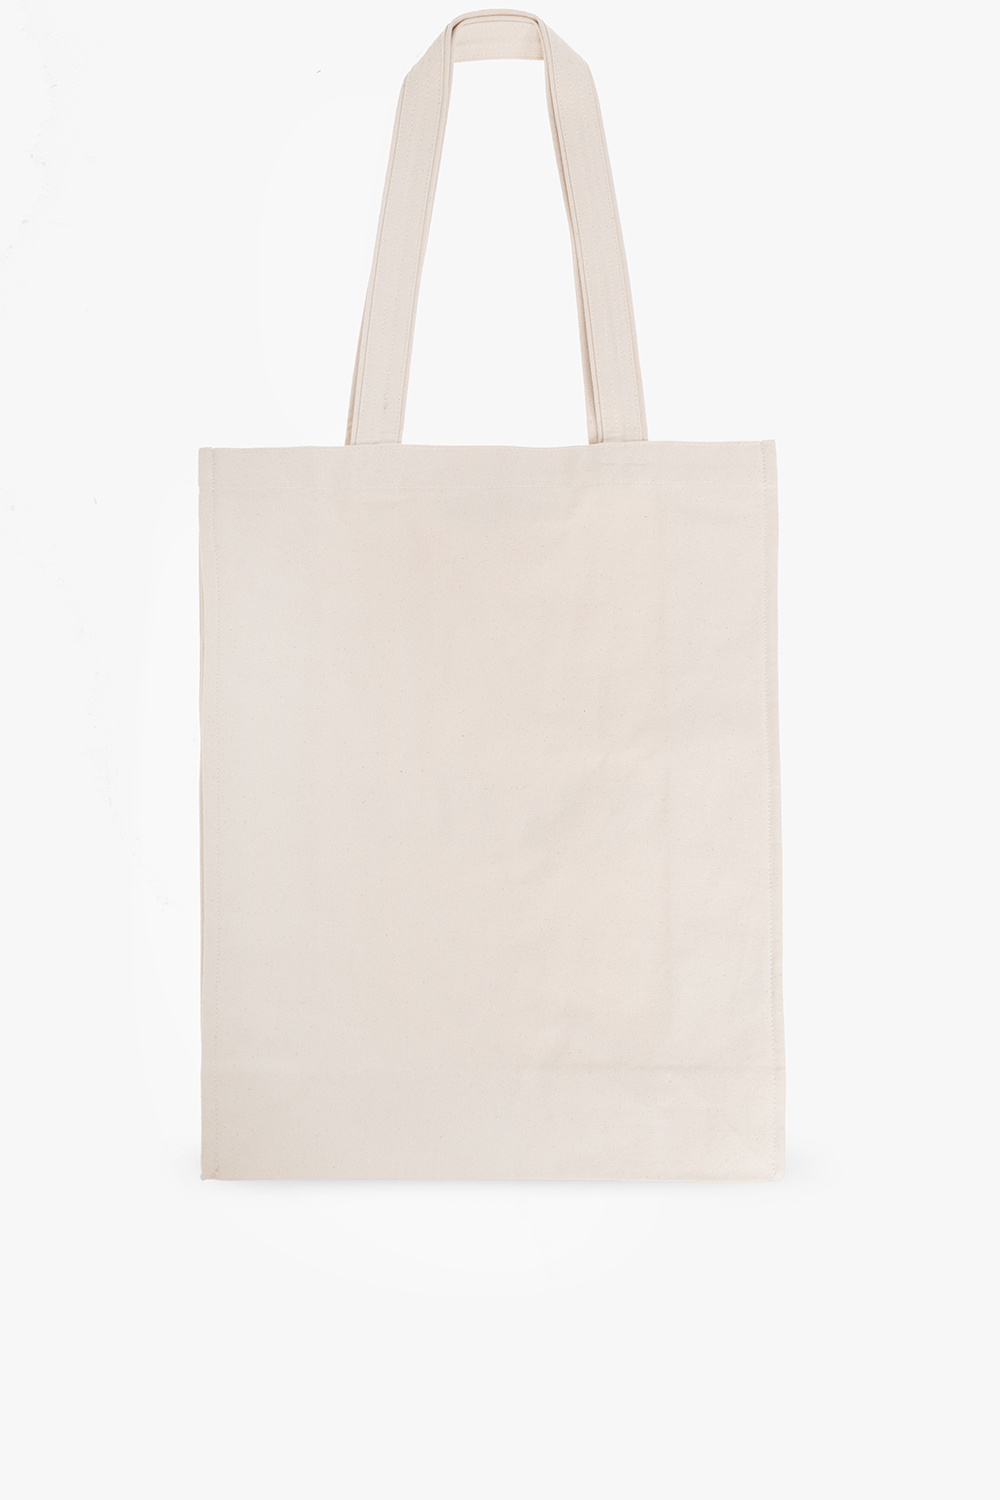 Etudes Shopper bag Dorfman-Pacific with logo